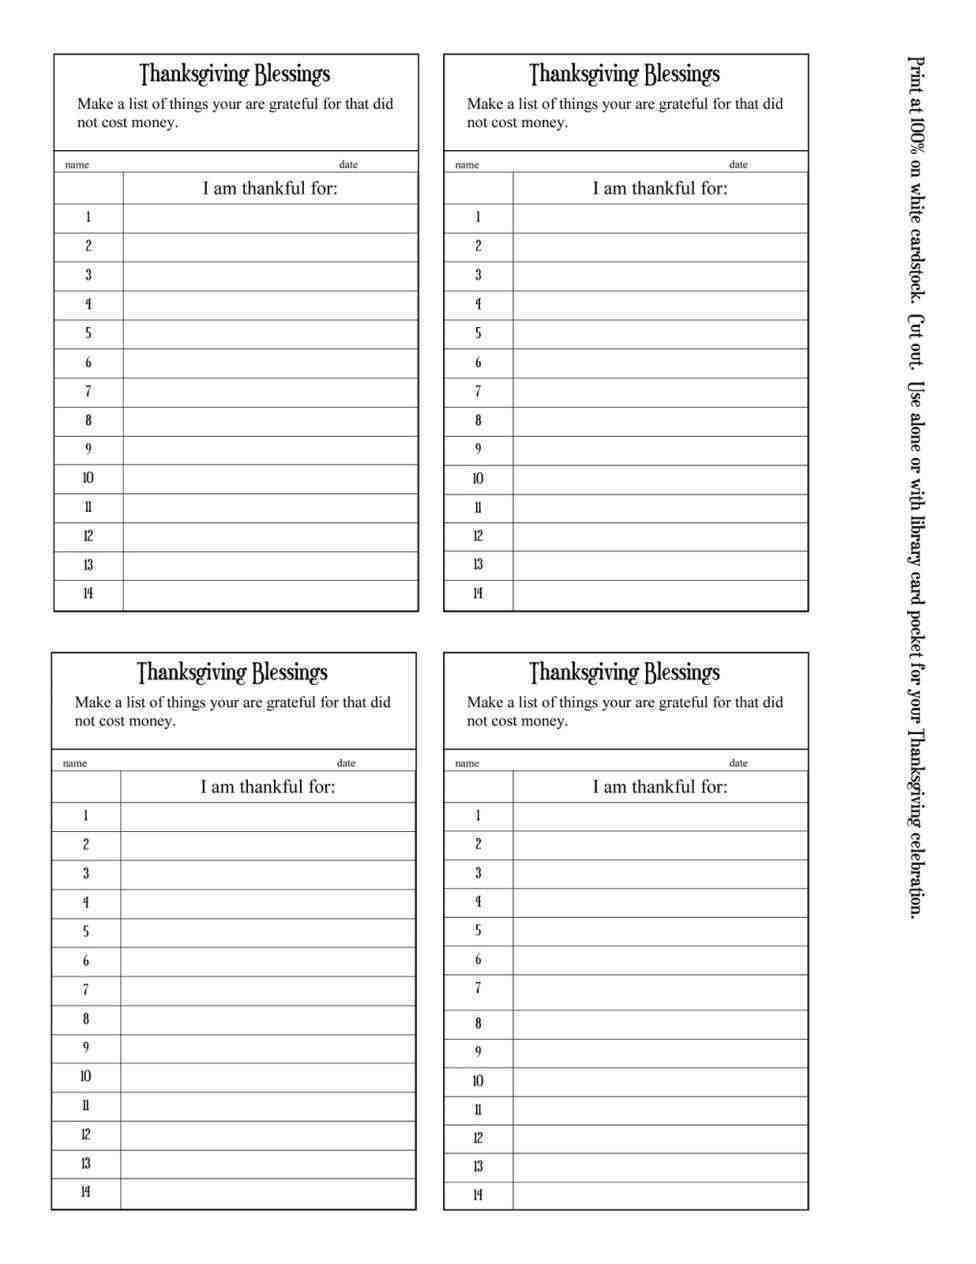 Baseball Lineup Cards Printable | Template Business Psd With Free Baseball Lineup Card Template